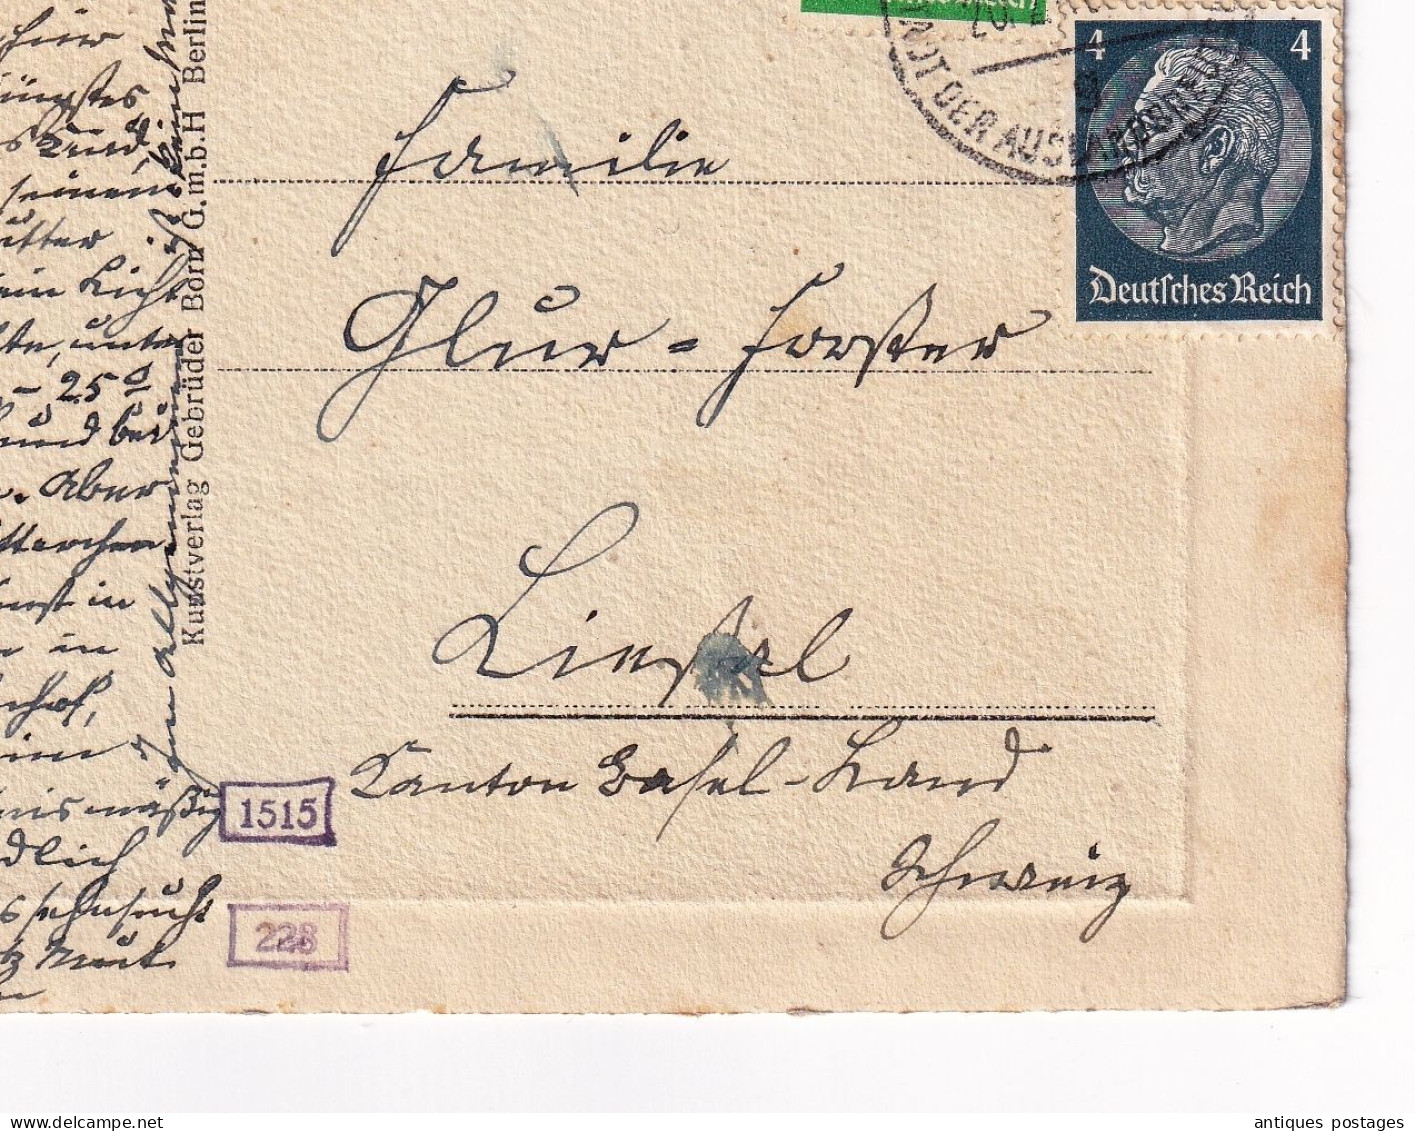 Postkart Stuttgart 1940 Deutschland Original Radierung Handabzug Allemagne Stamp Paul Von Hindenburg - Briefe U. Dokumente